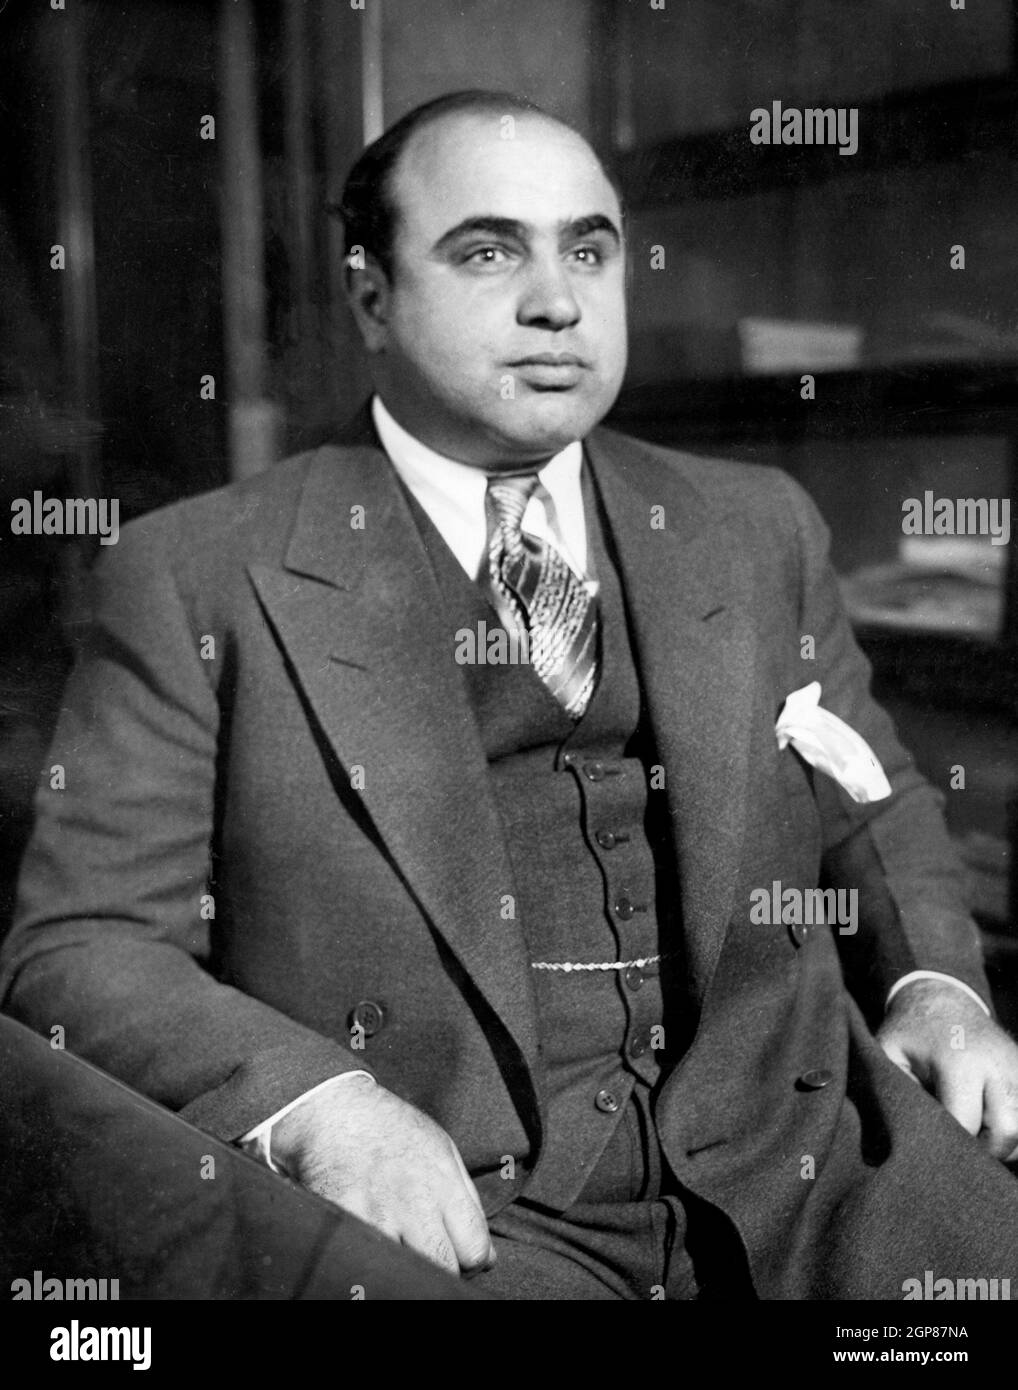 Al Capone, Alphonse Gabriel Capone (1899 – 1947) le gangster américain a atteint la notoriété pendant l'ère de la prohibition en tant que cofondateur et patron de l'ensemble de Chicago. Son règne de sept ans en tant que chef du crime a pris fin quand il est allé en prison à l'âge de 33 ans. Al Capone est montré ici au Bureau de détective de Chicago après son arrestation sur une accusation de vagabondage en tant qu'ennemi public n° 1 Banque D'Images